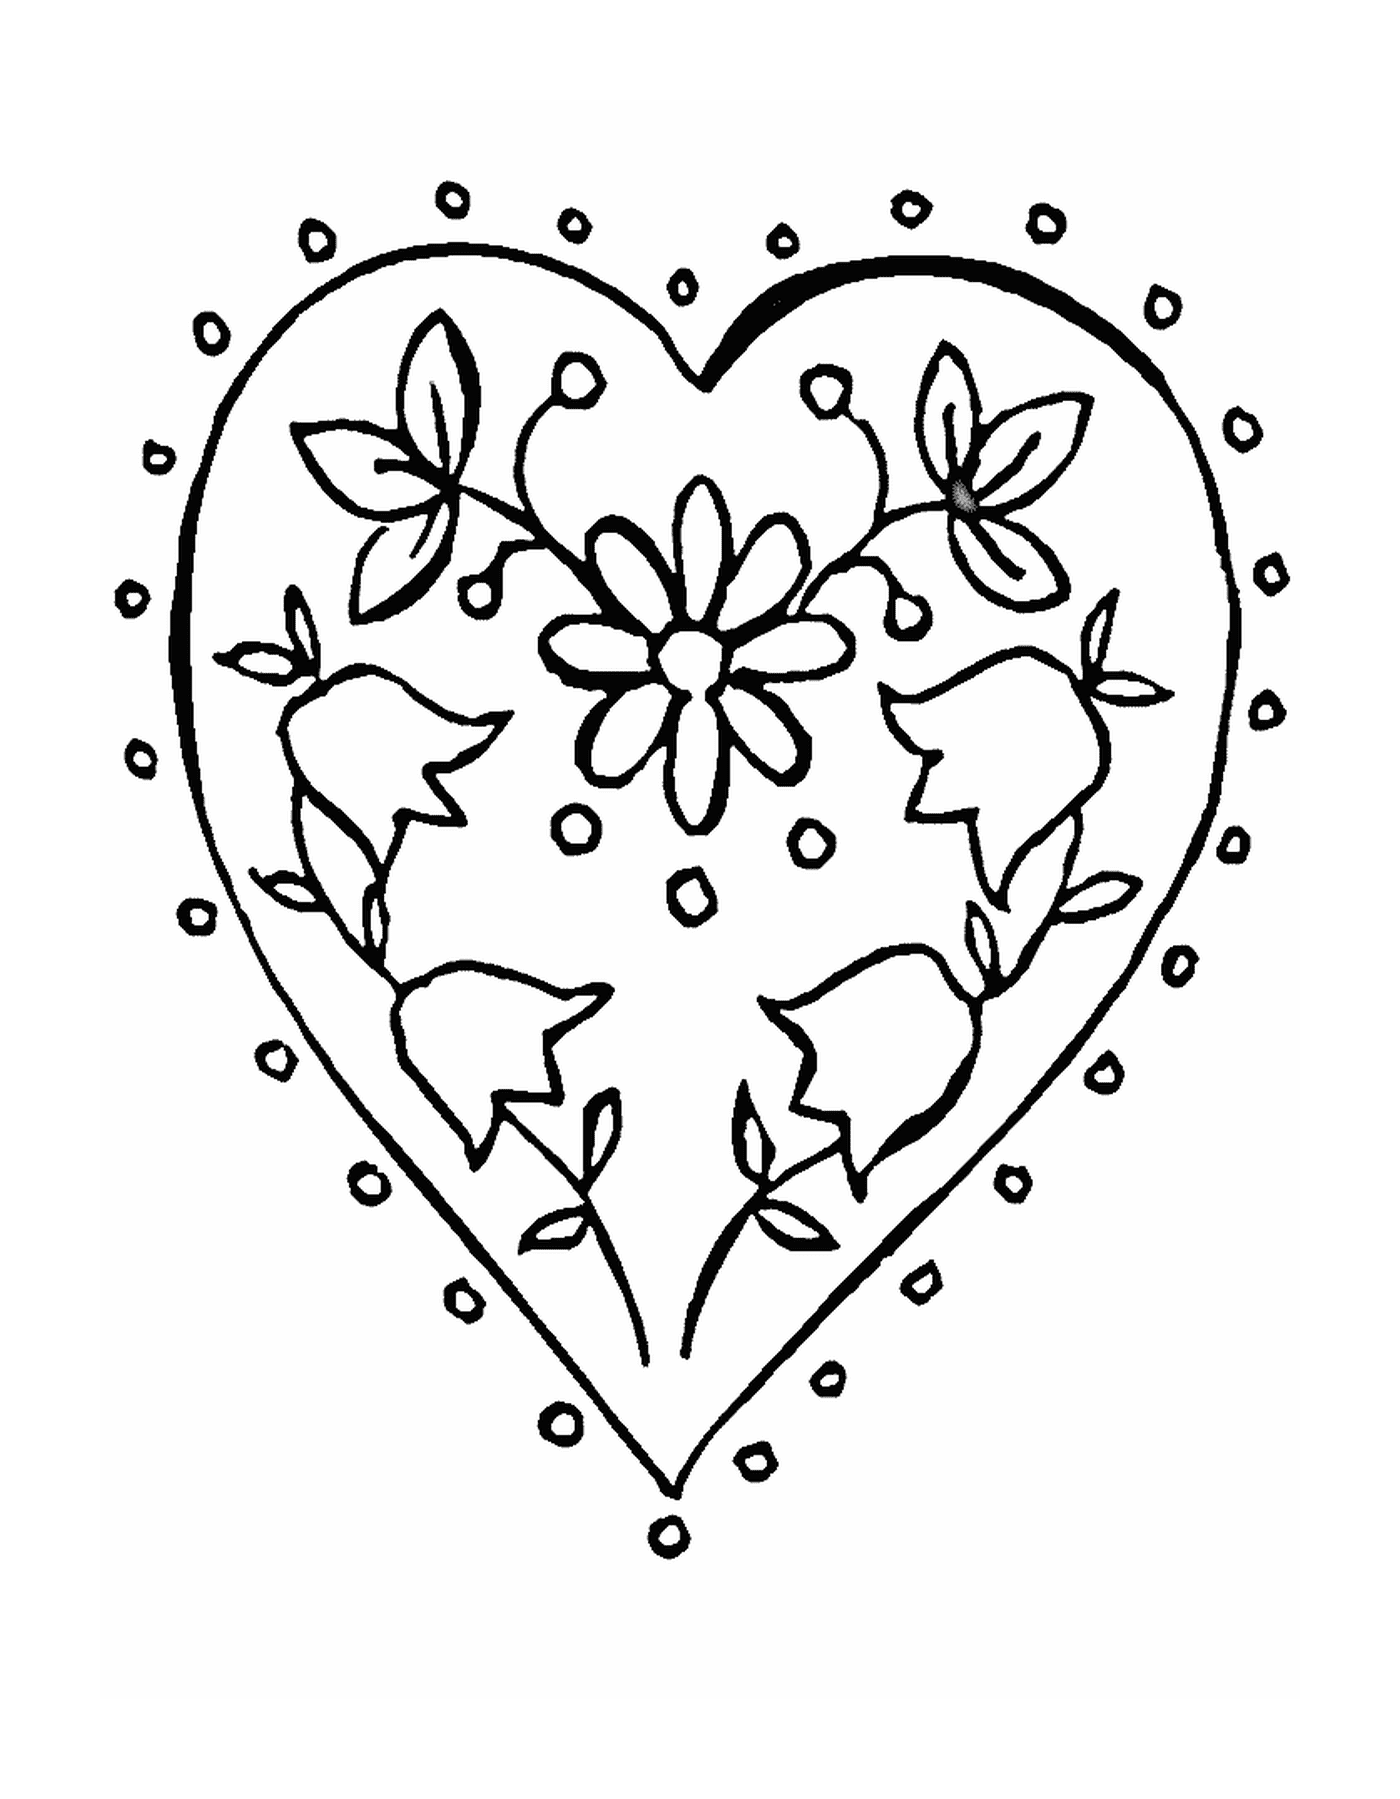  Um coração decorado com flores 